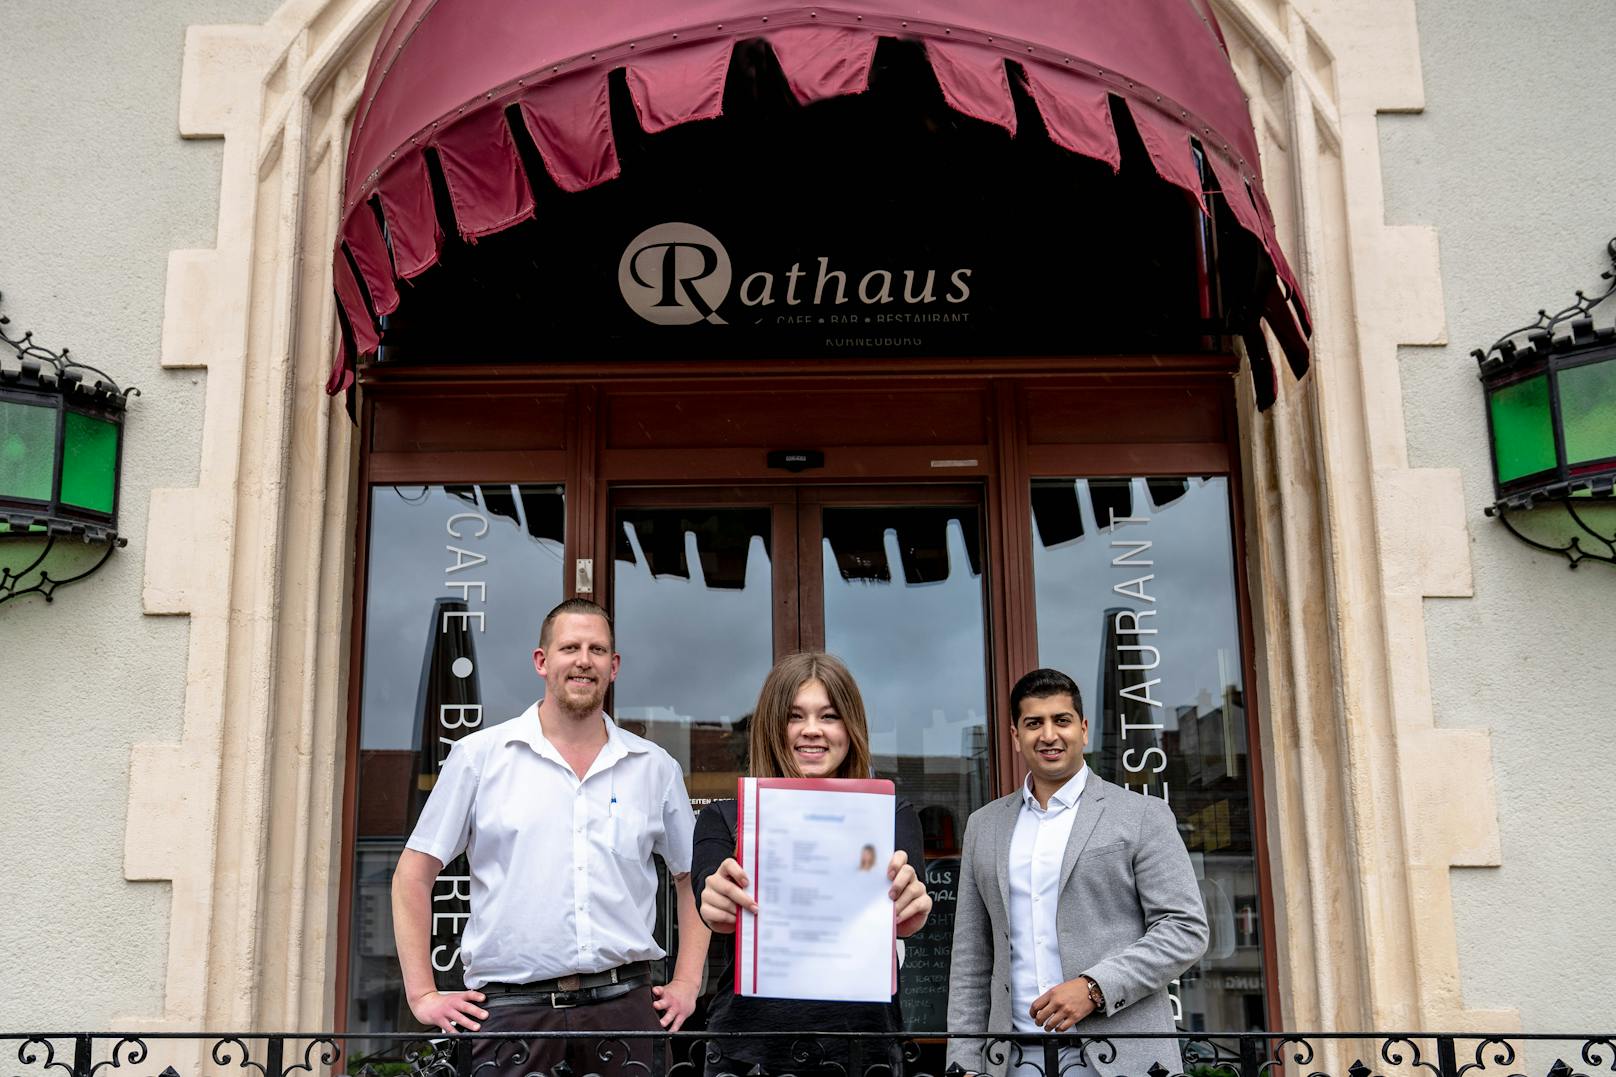 Bei ihrer neuen Lehrstelle: Samantha T. mit Rathaus-Café-Besitzer Martina Schödl und Gewerkschafter Sumit Kumar